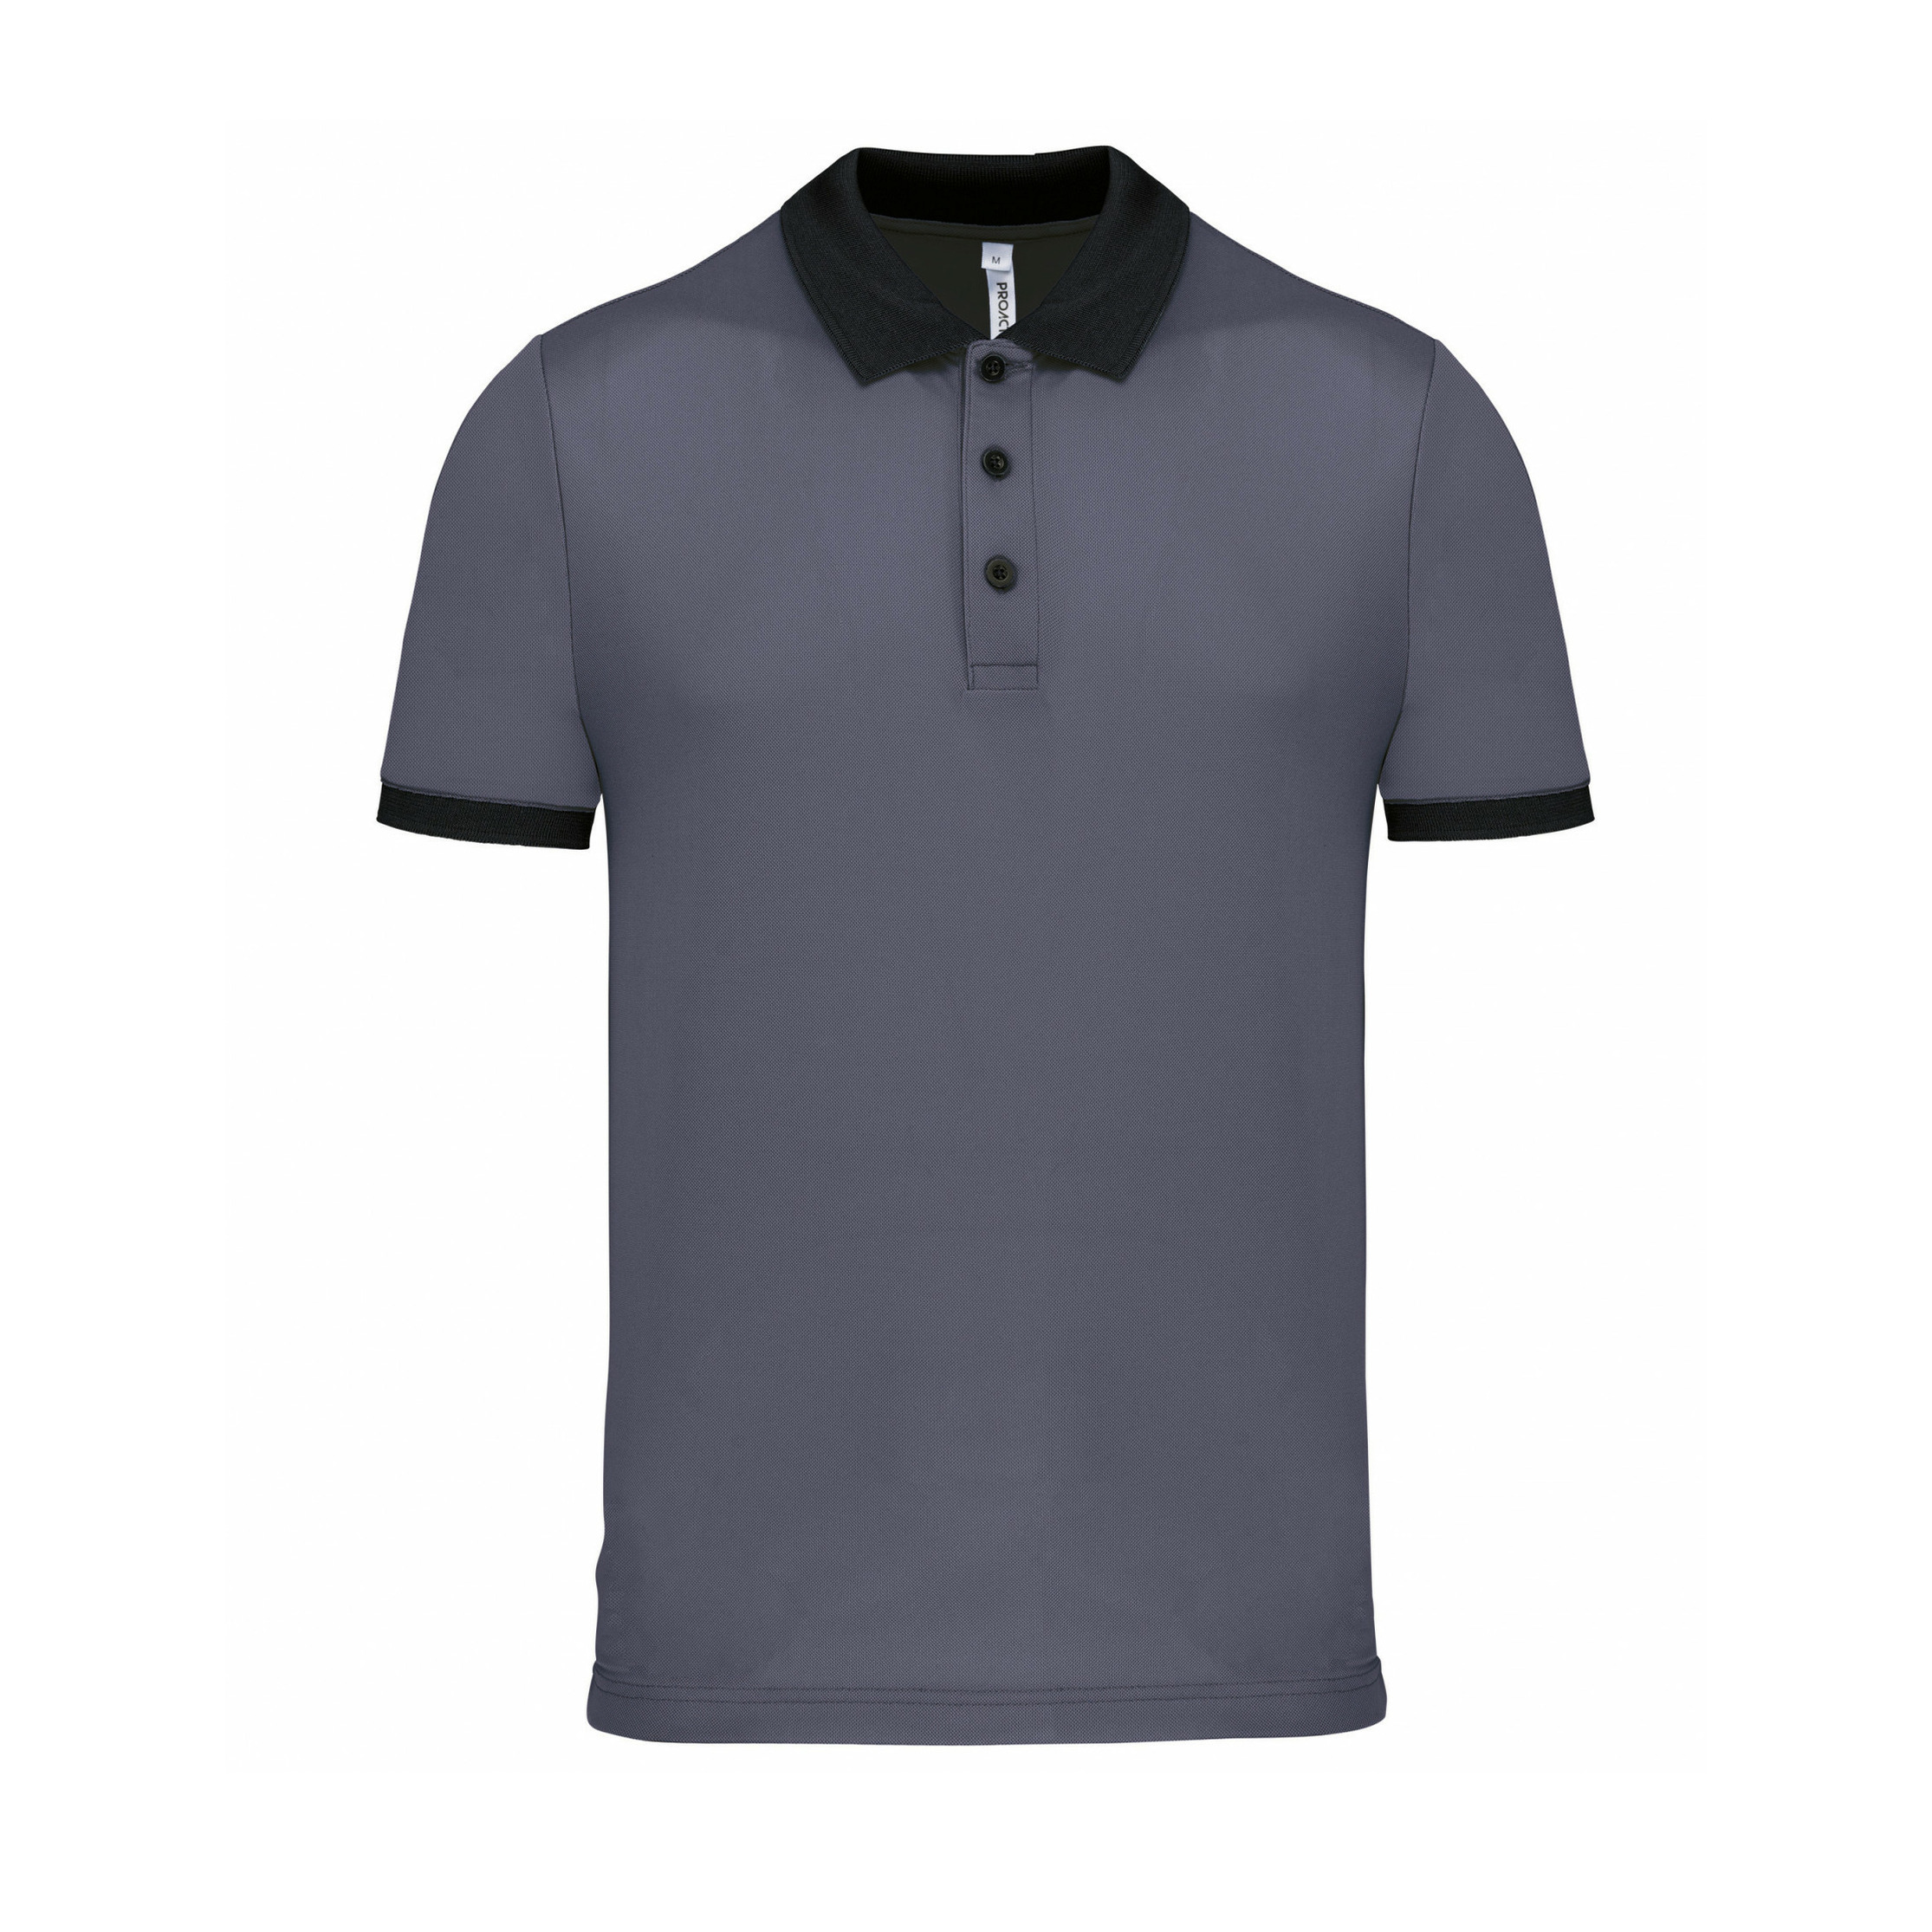 Proact Poloshirt Sport Pro premium quality - grijs/zwart - mesh polyester - voor heren